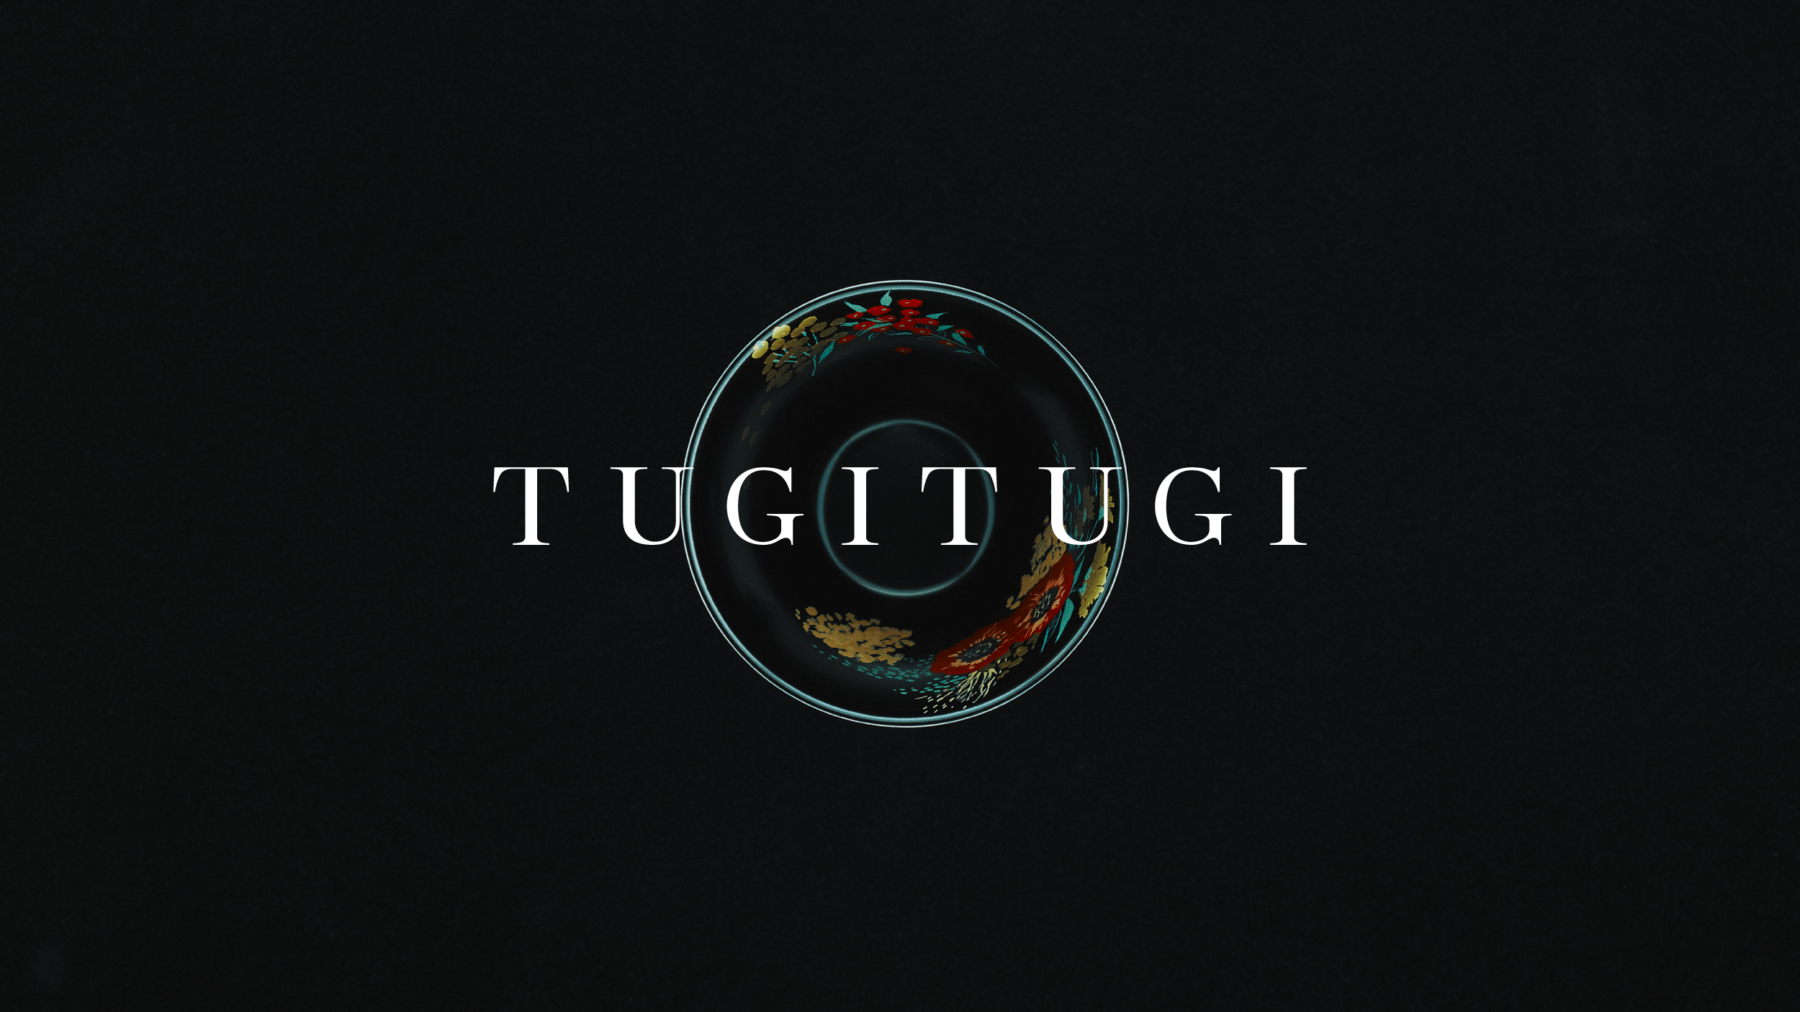 “次” 世代の技術とデザインの化学反応により、日本の漆文化を “継” いでいく「TUGI TUGI」